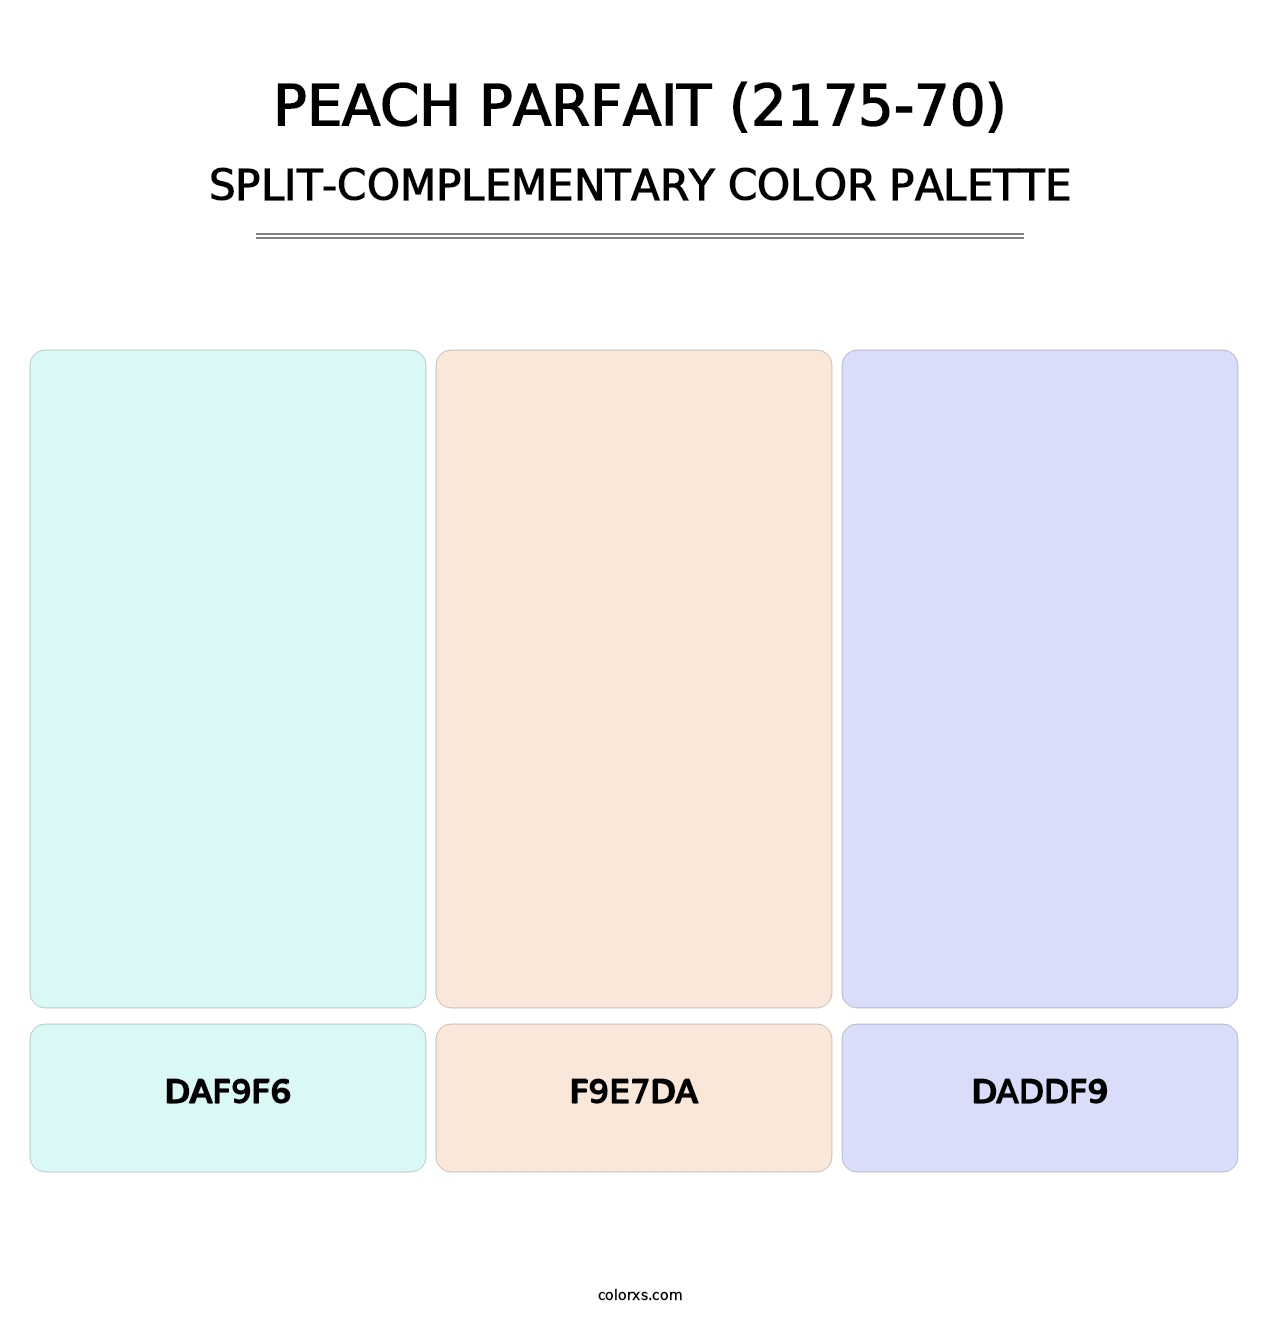 Peach Parfait (2175-70) - Split-Complementary Color Palette